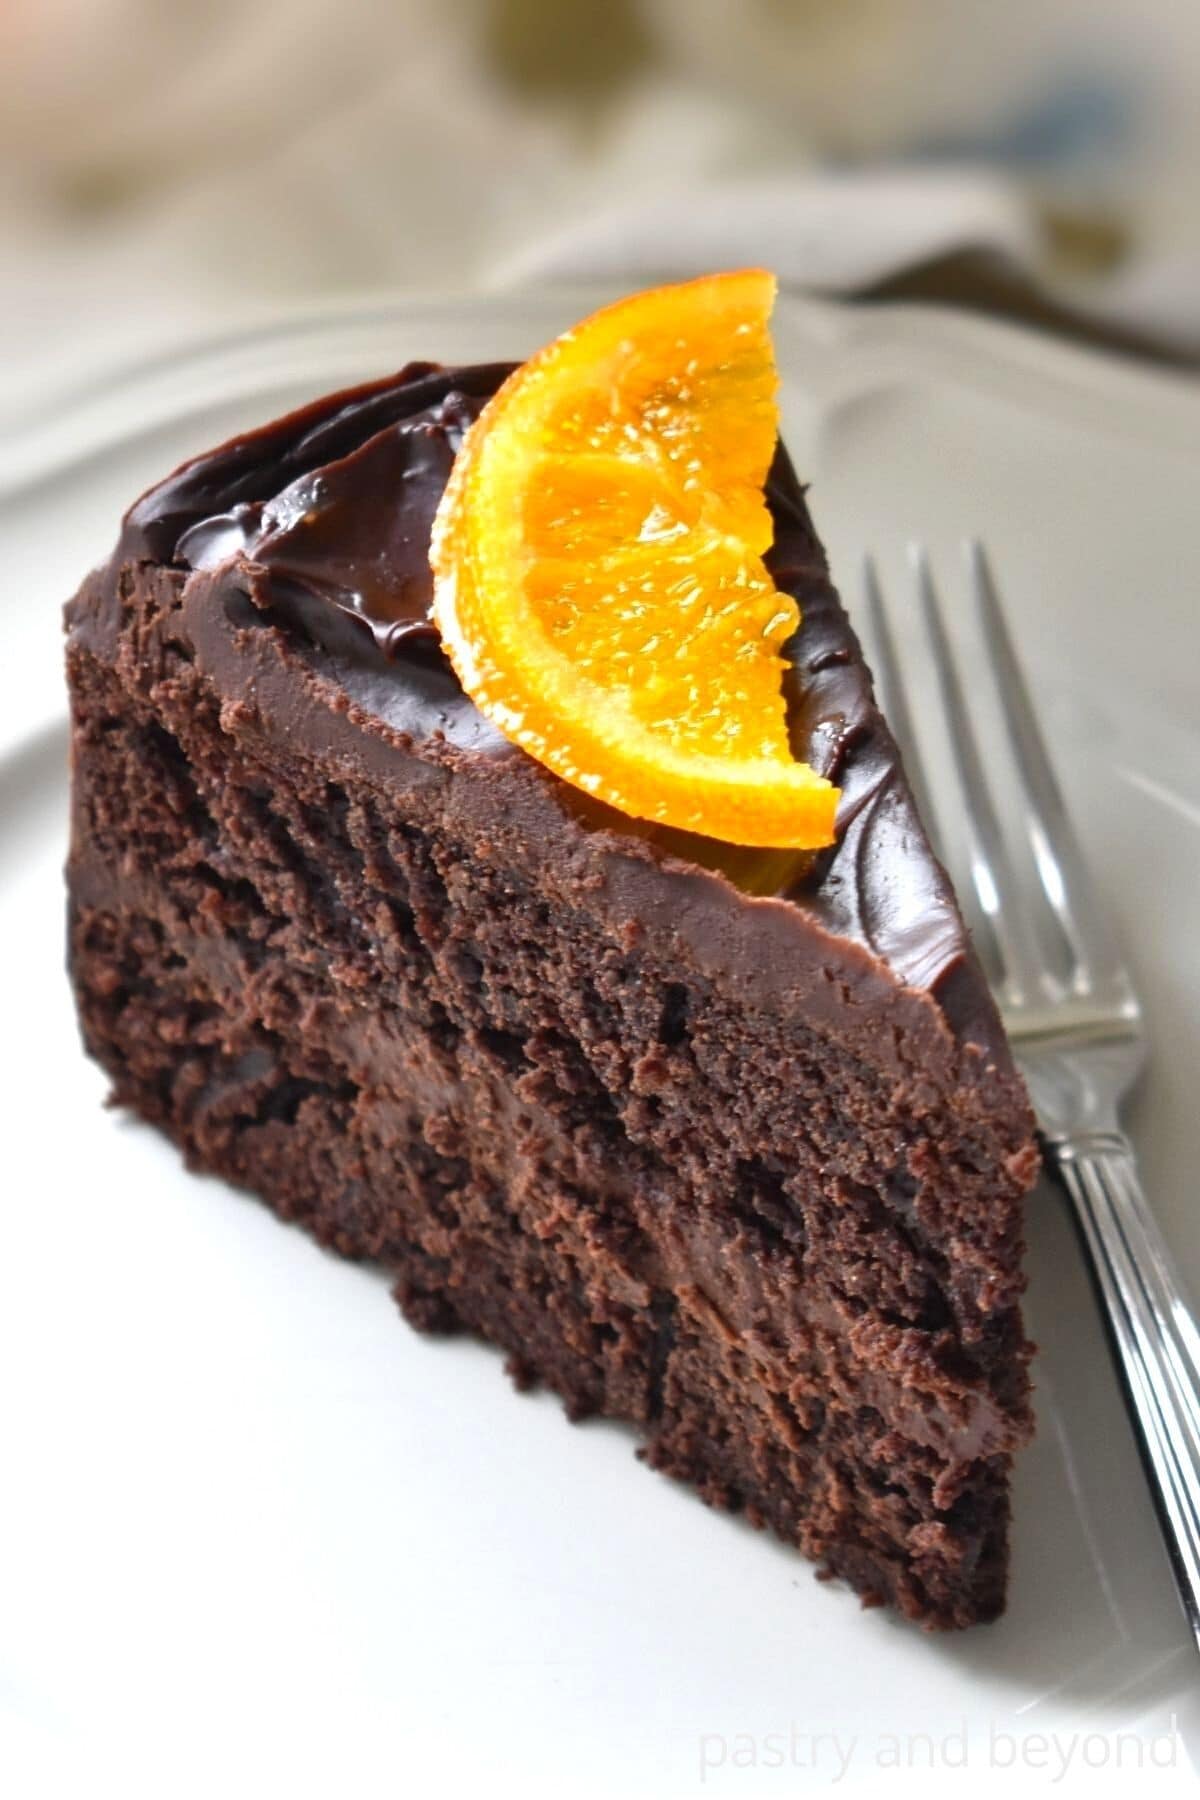 A slice of chocolate orange cake.